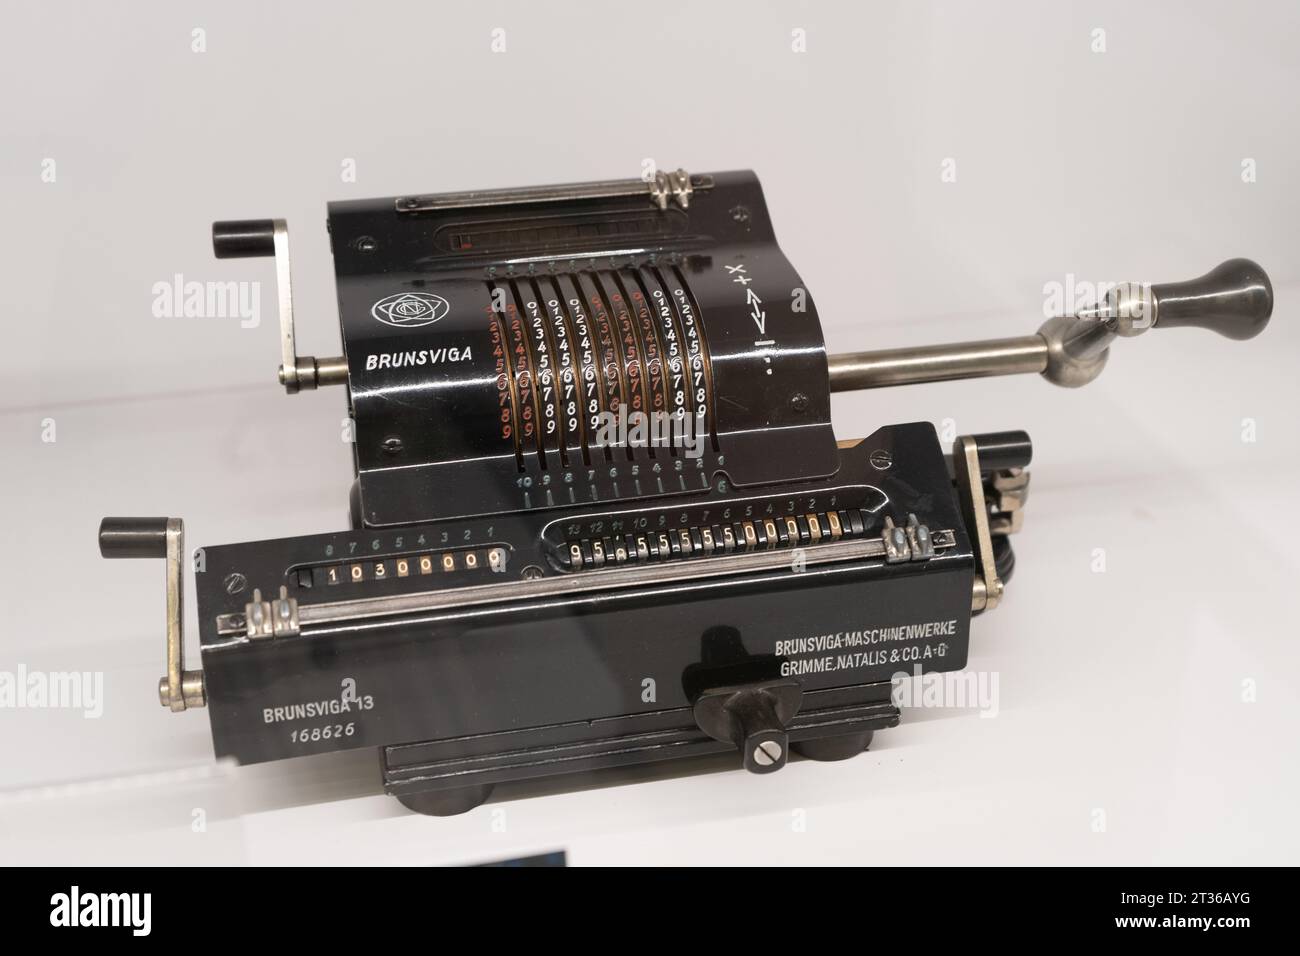 La máquina de adición BRUNSVIGA es el primer prototipo de una calculadora sobre fondo blanco. Dispositivo mecánico antiguo. Polonia, Varsovia - 28 de julio de 2023. Foto de stock